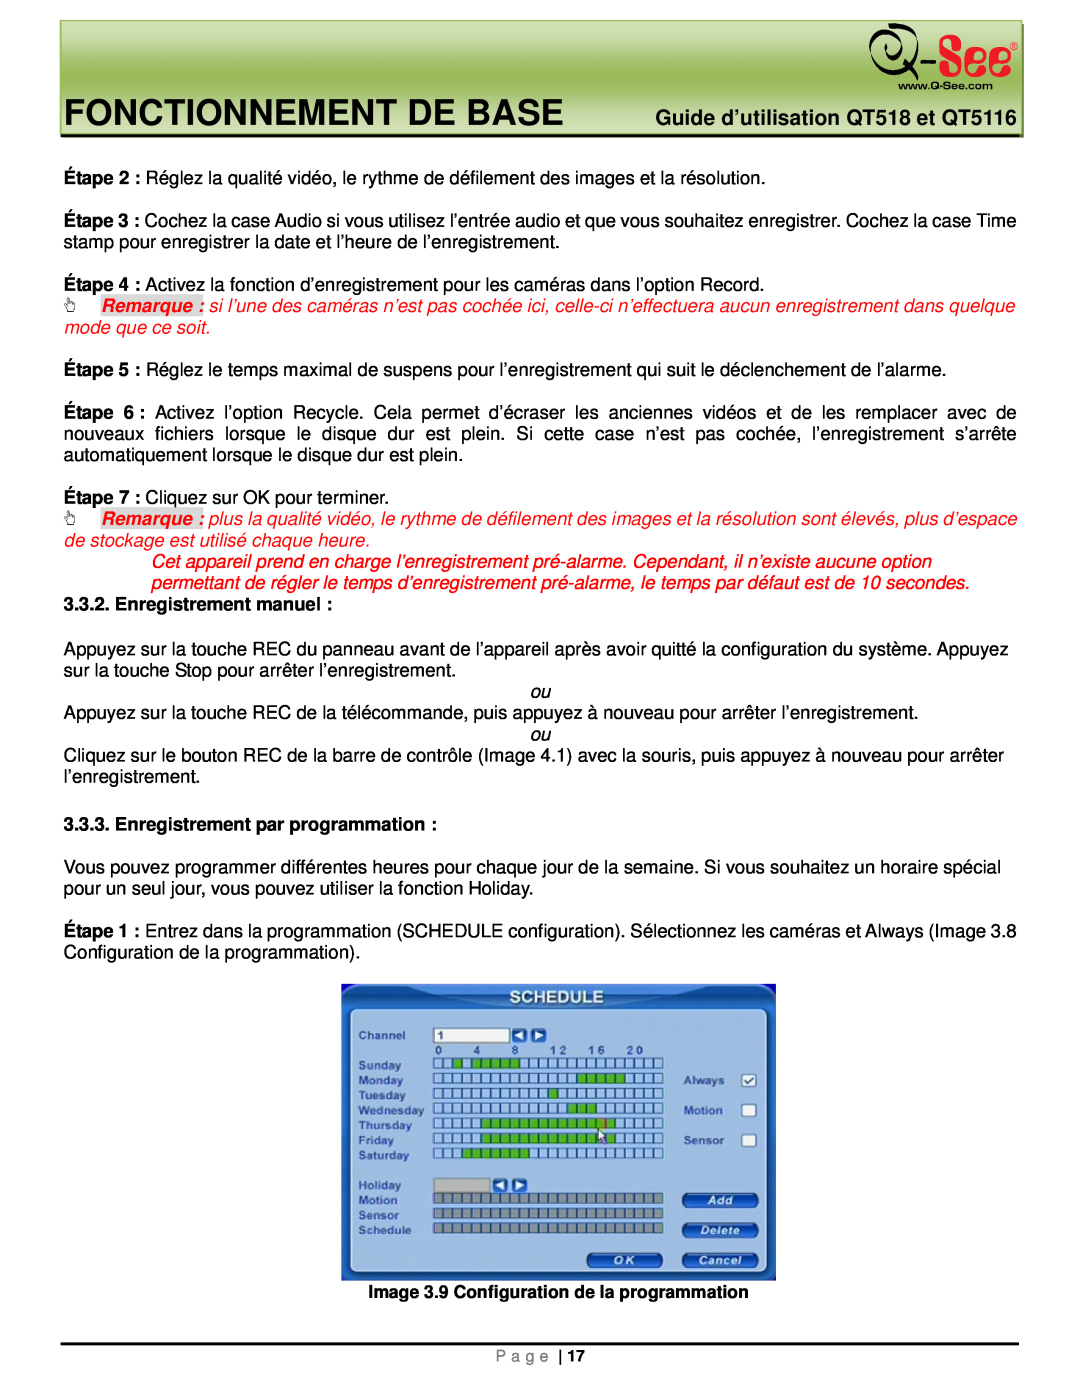 Q-See manual Fonctionnement De Base, Guide d’utilisation QT518 et QT5116, Enregistrement manuel 